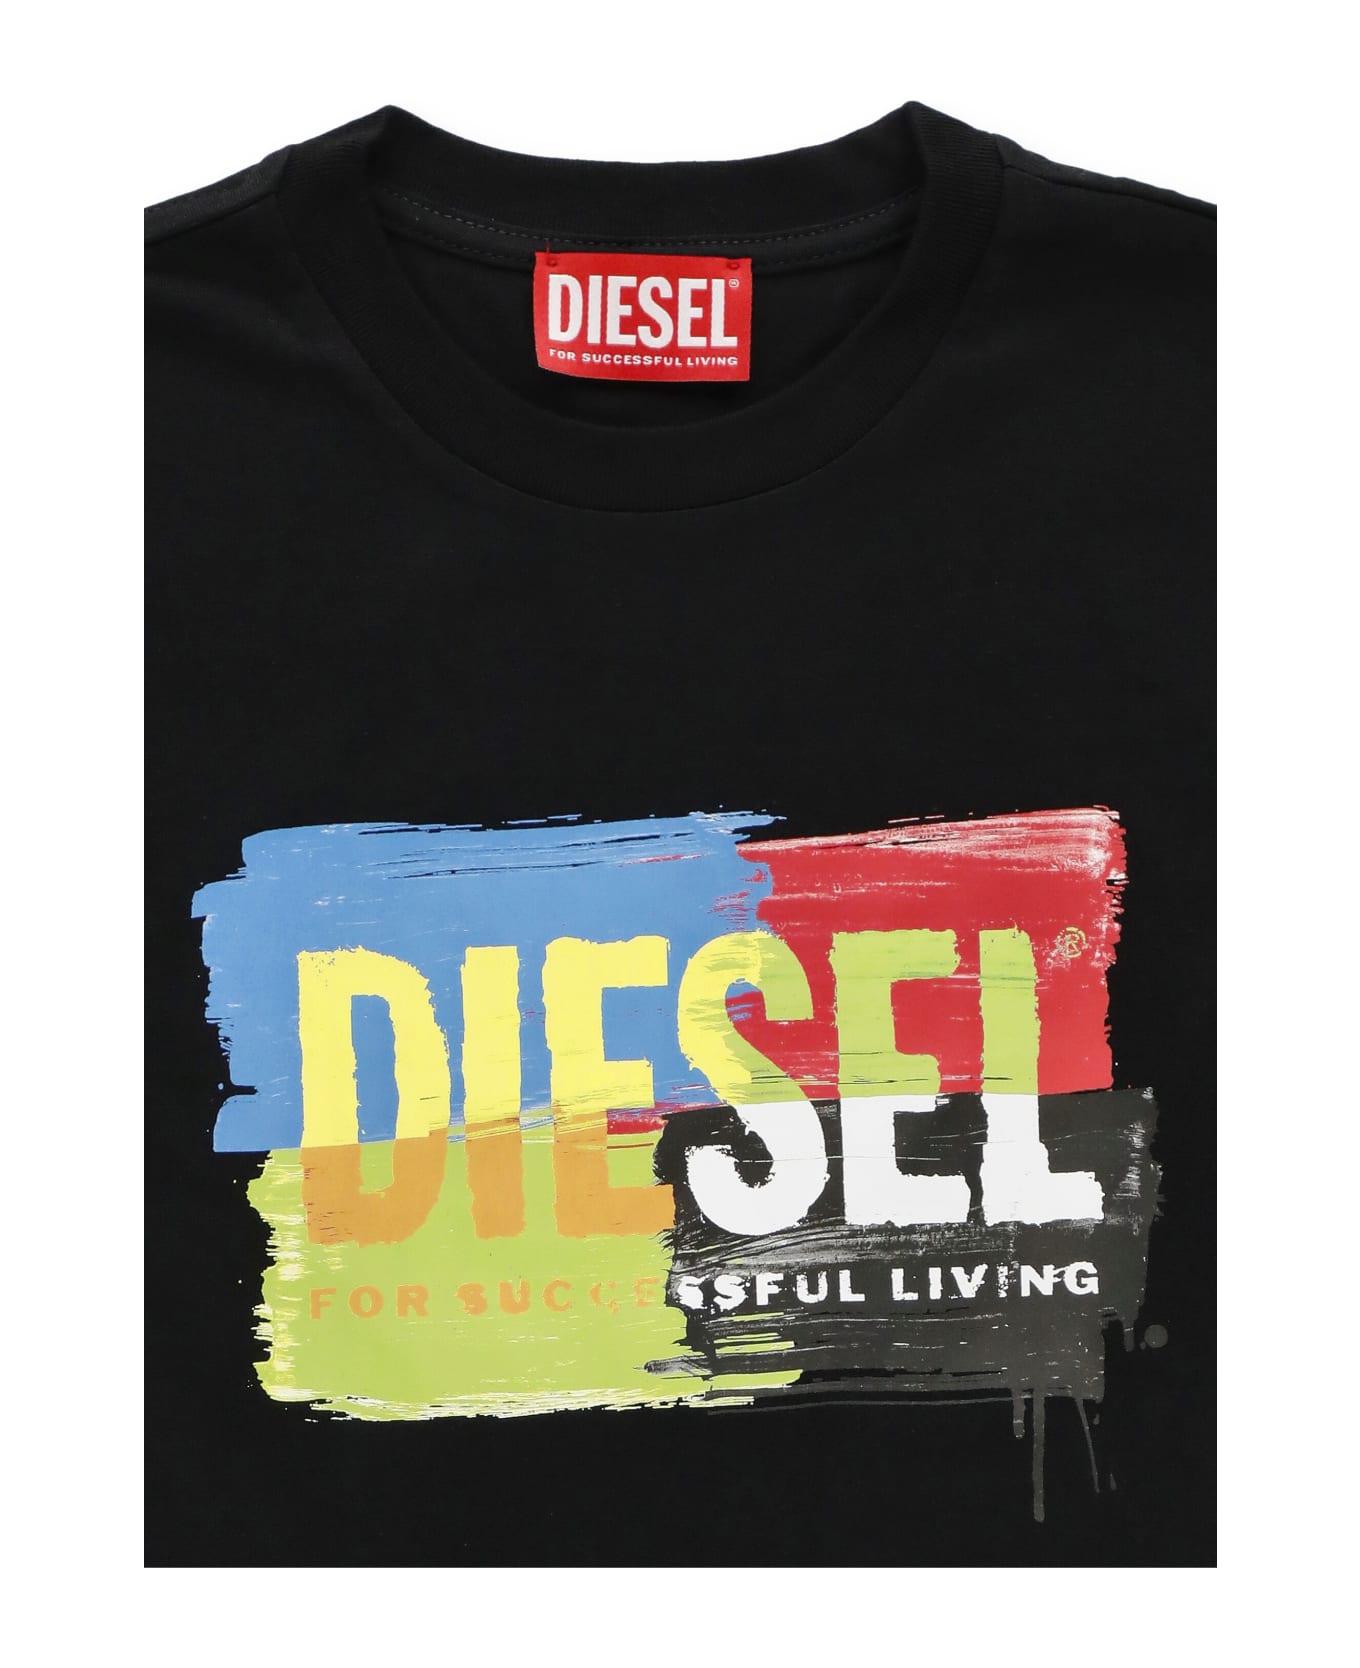 Diesel Tkand T-shirt - Black